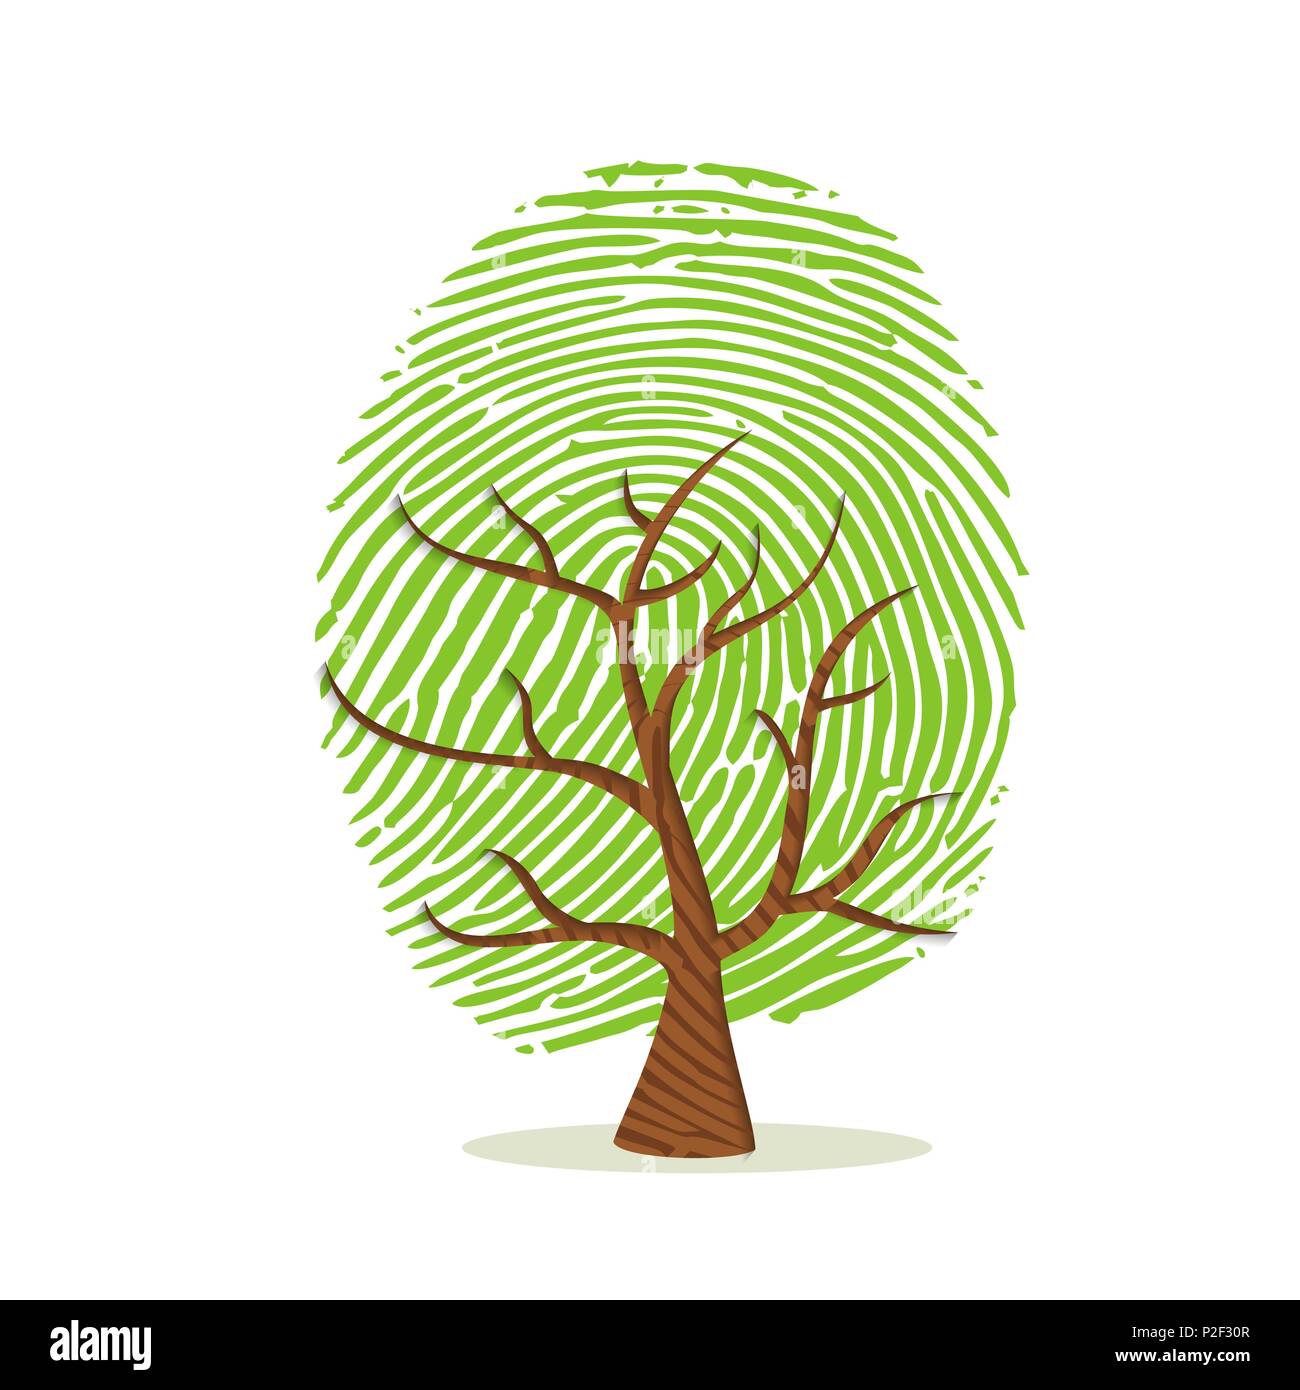 Fingerprint Baum aus grünem menschlichen Finger drucken. Identitätskonzept, Umwelt Hilfe oder Erde kümmern. EPS 10 Vektor. Stock Vektor